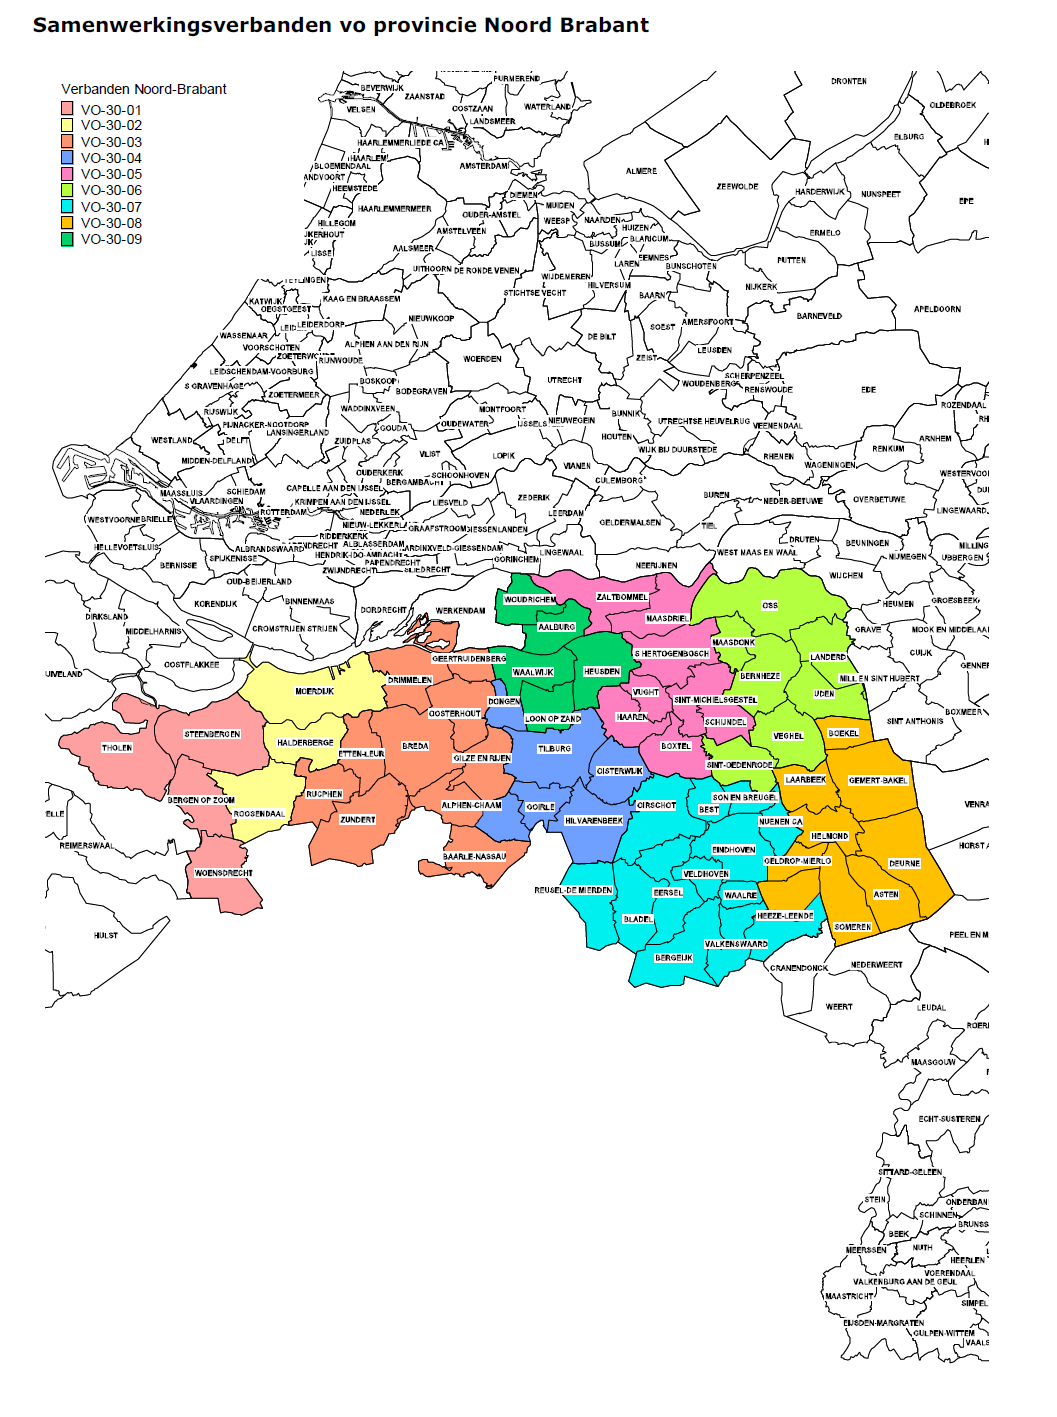 2.2 Regio Het Van Haestrechtcollege staat in regio De Langstraat en behoort tot SWV-VO 30.